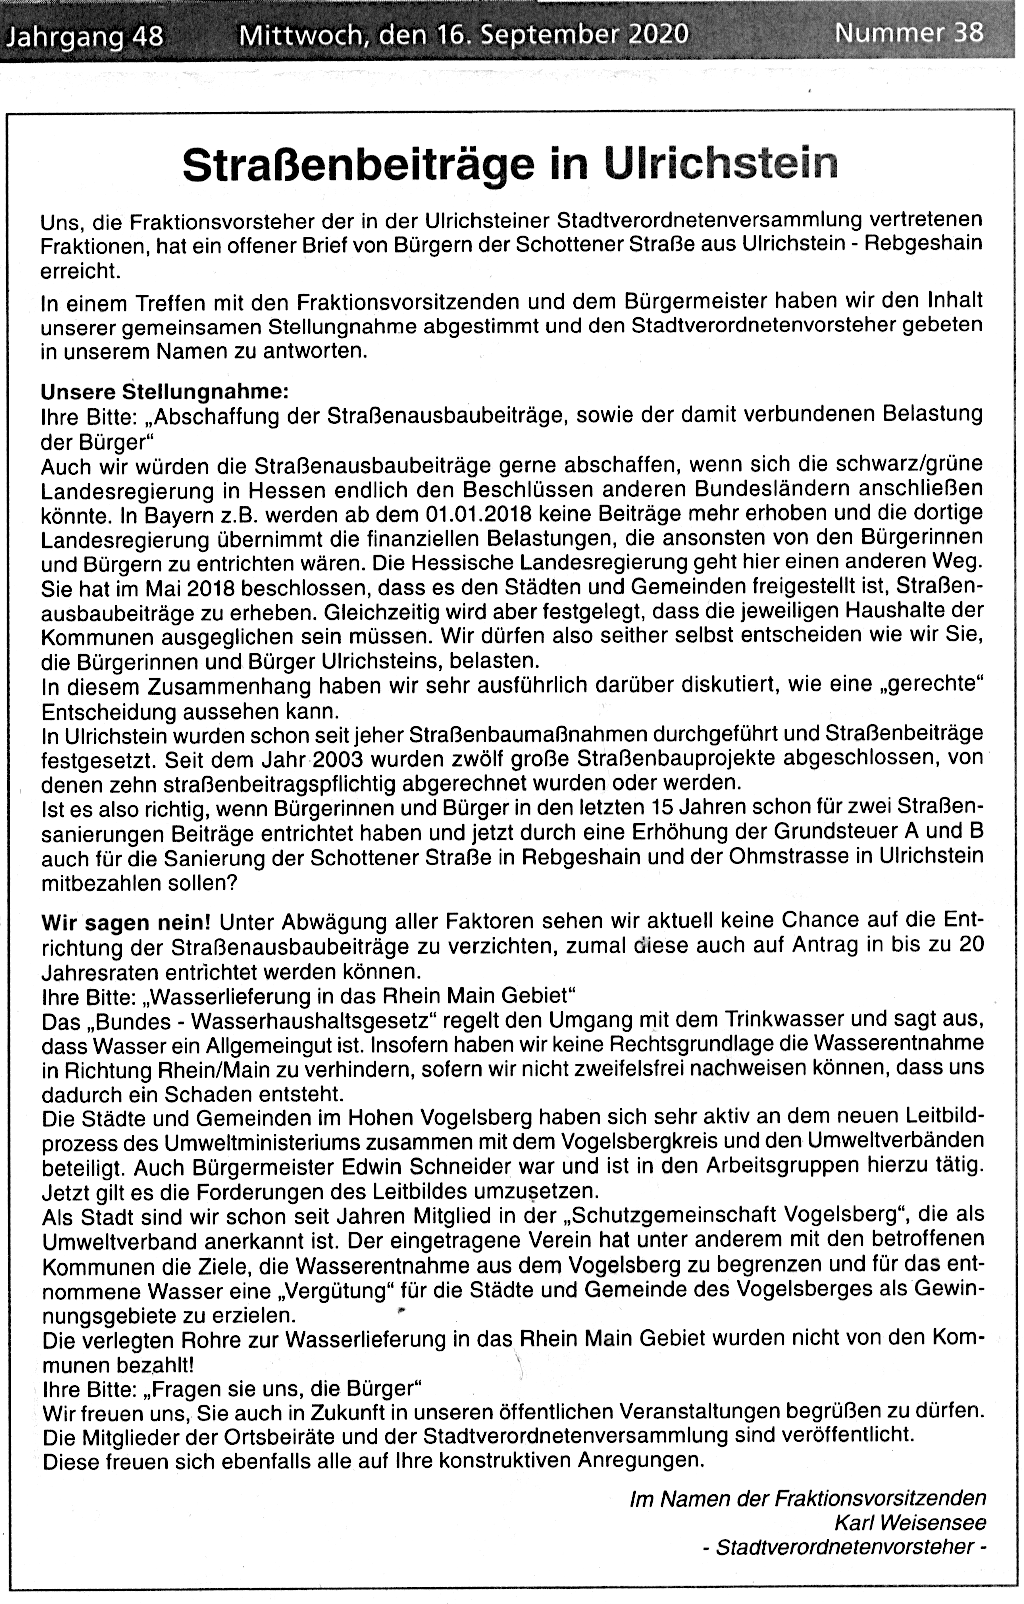 Stellungnahme des Fraktionsvorstehers Stadtverordnetenversammlung Ulrichstein, Weisensee, zu Strassenausbaugebühren